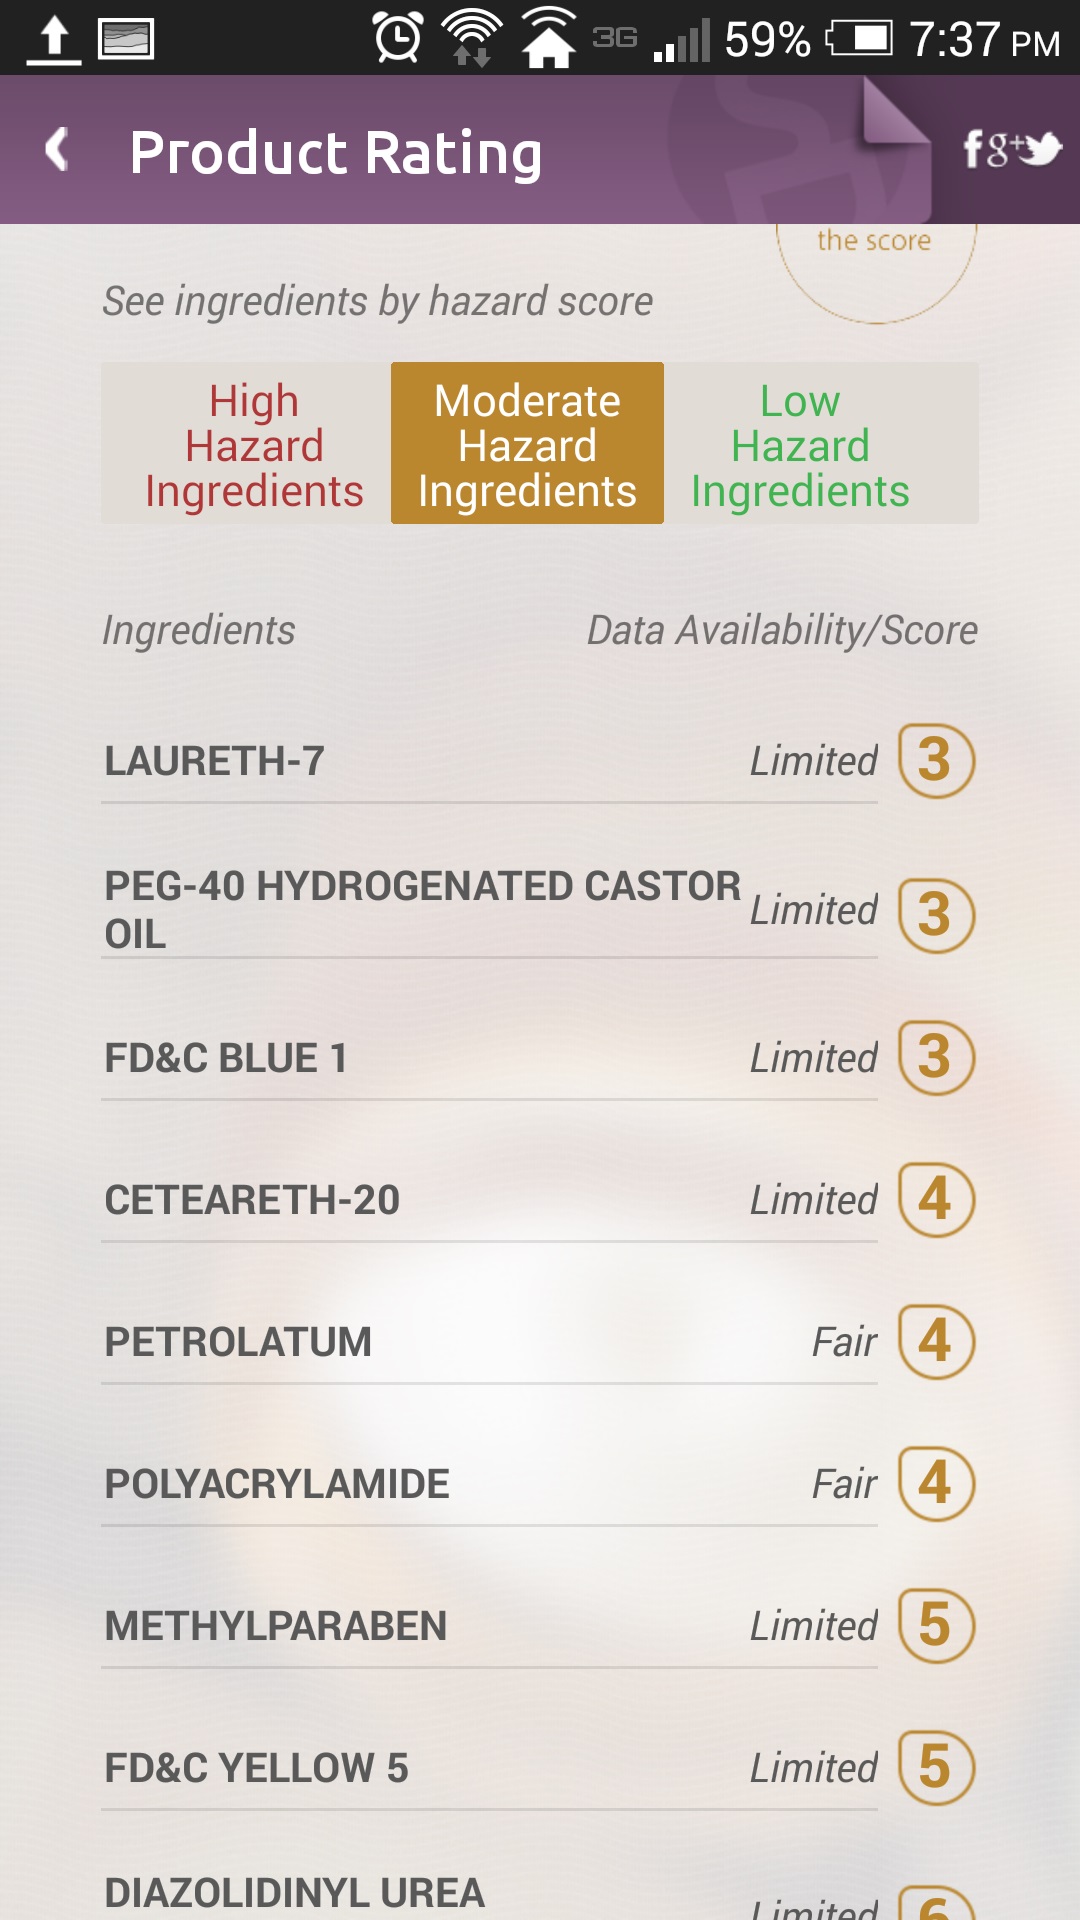 Individual ingredient hazard